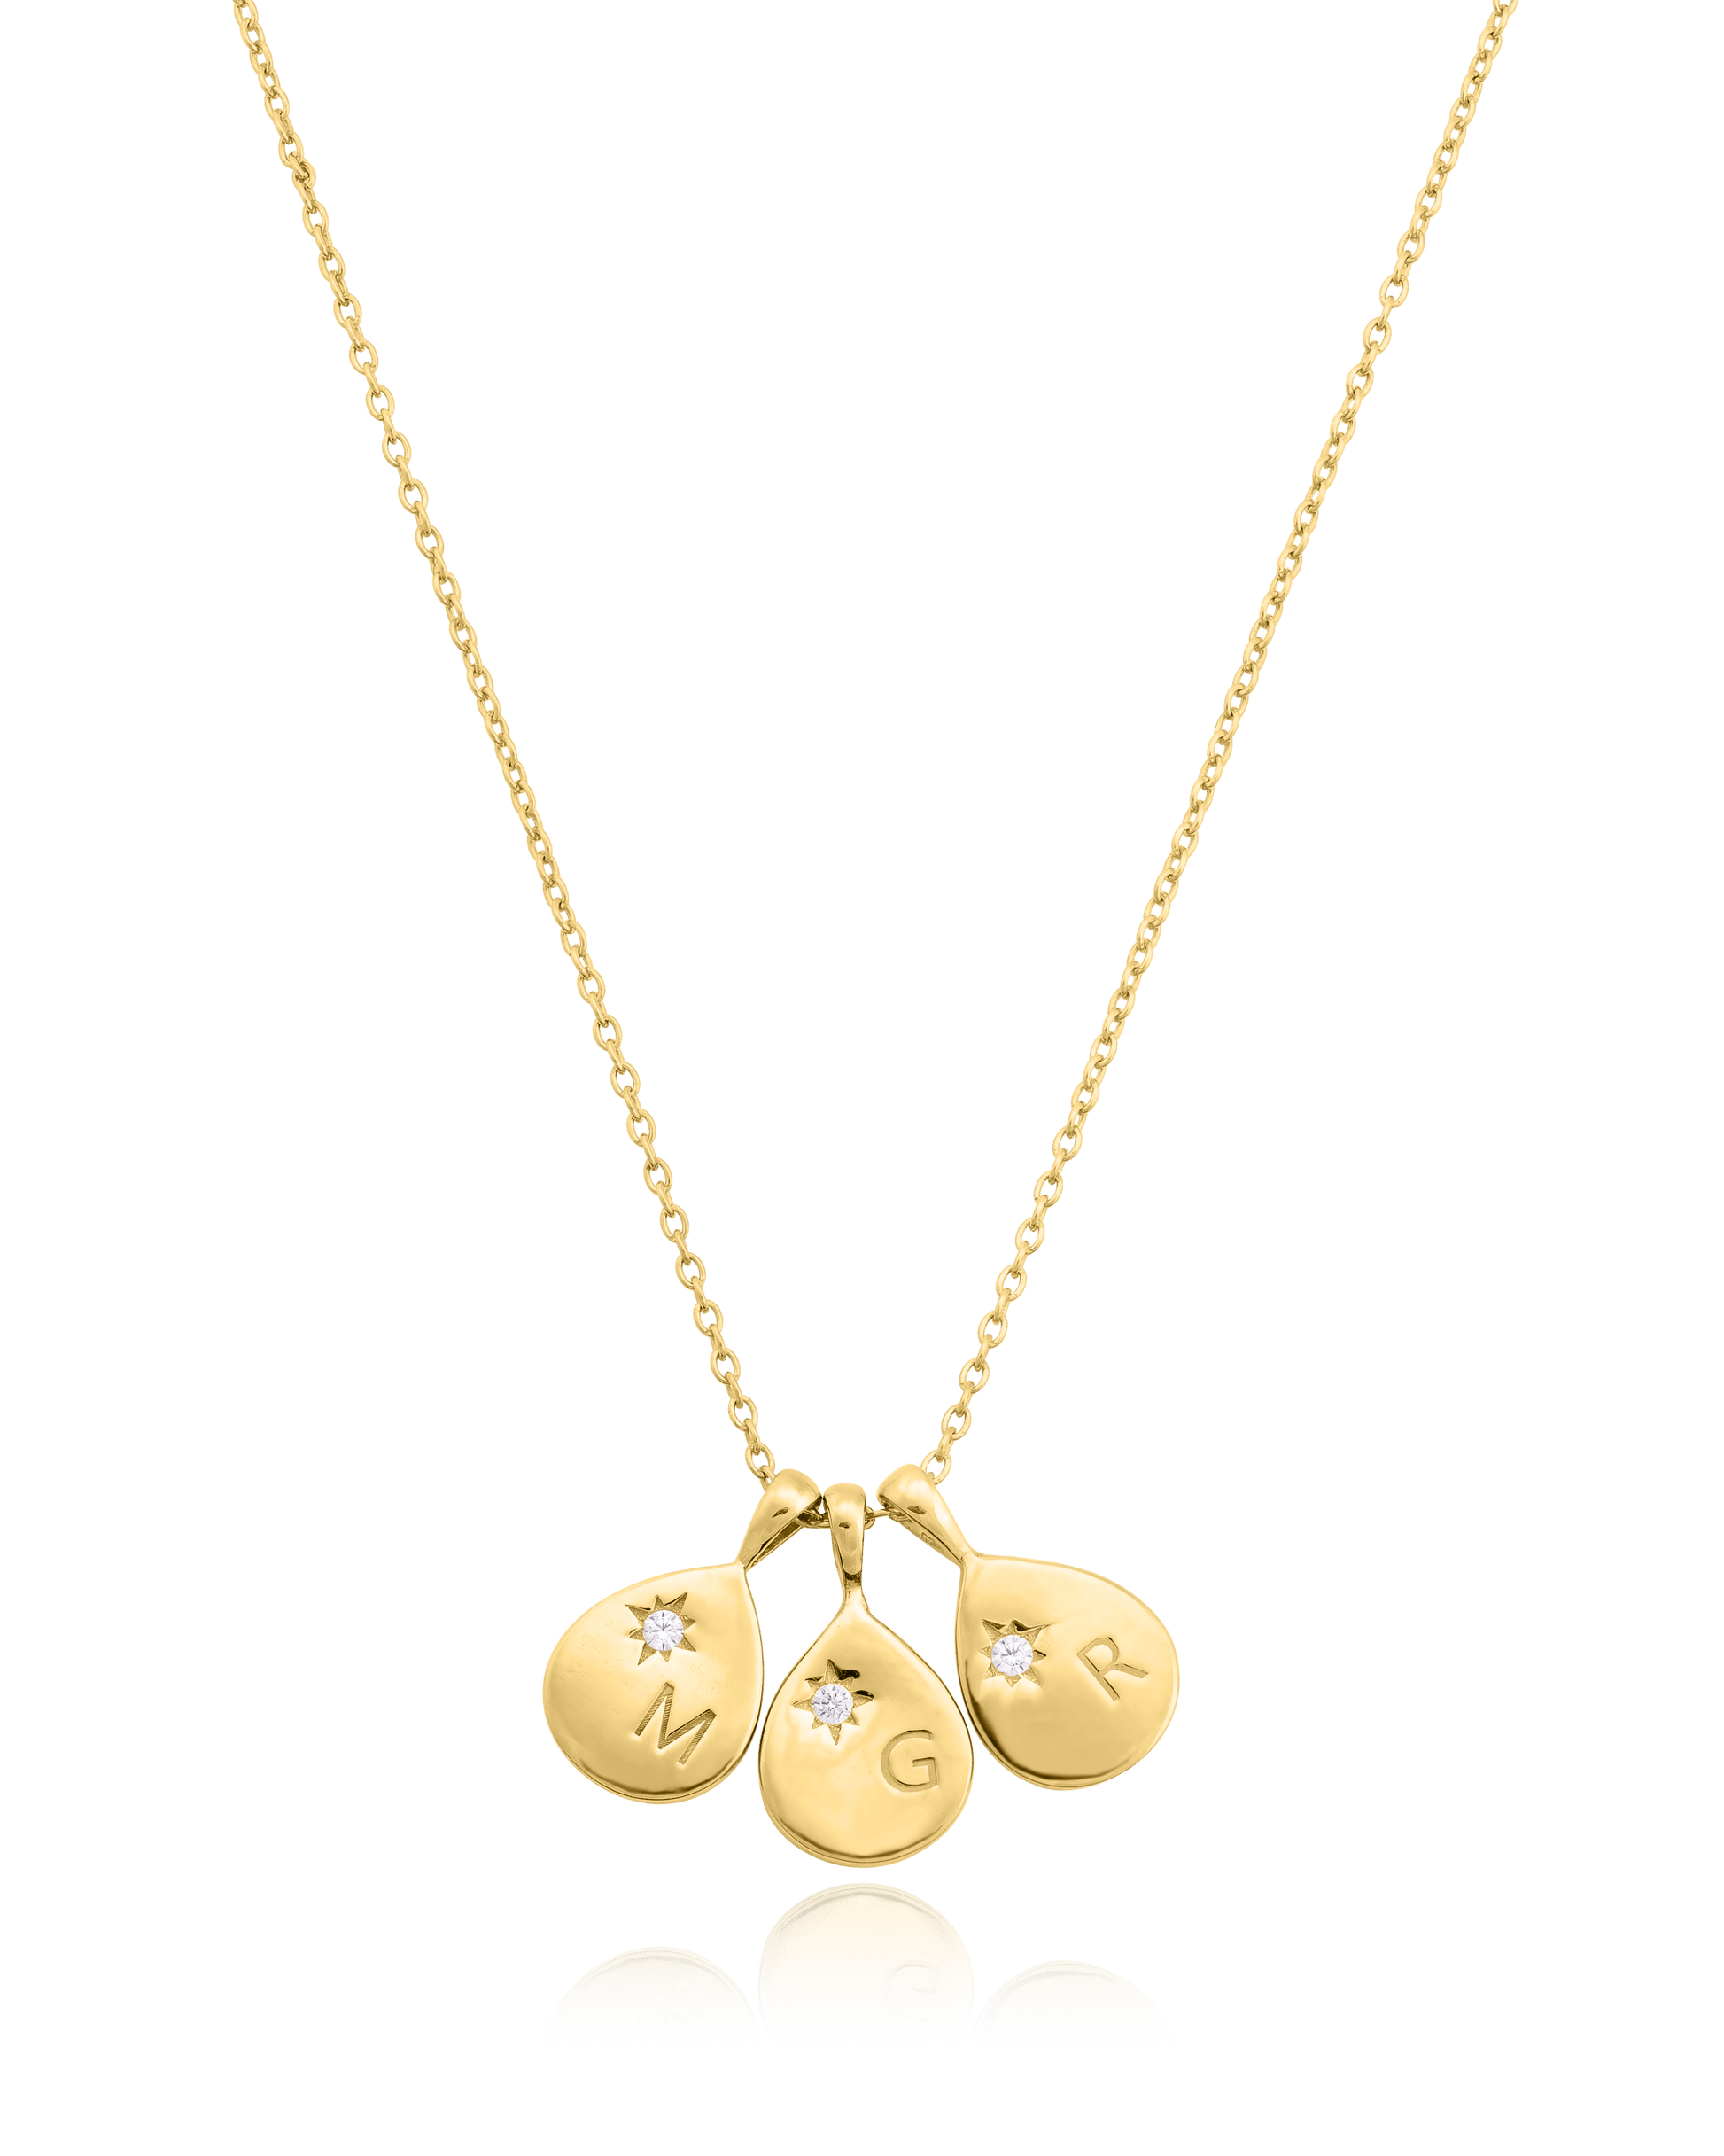 Diamond Drop Initial Necklace - 18K Gold Vermeil Necklaces magal-dev 3 Drops 16”+2” extender 